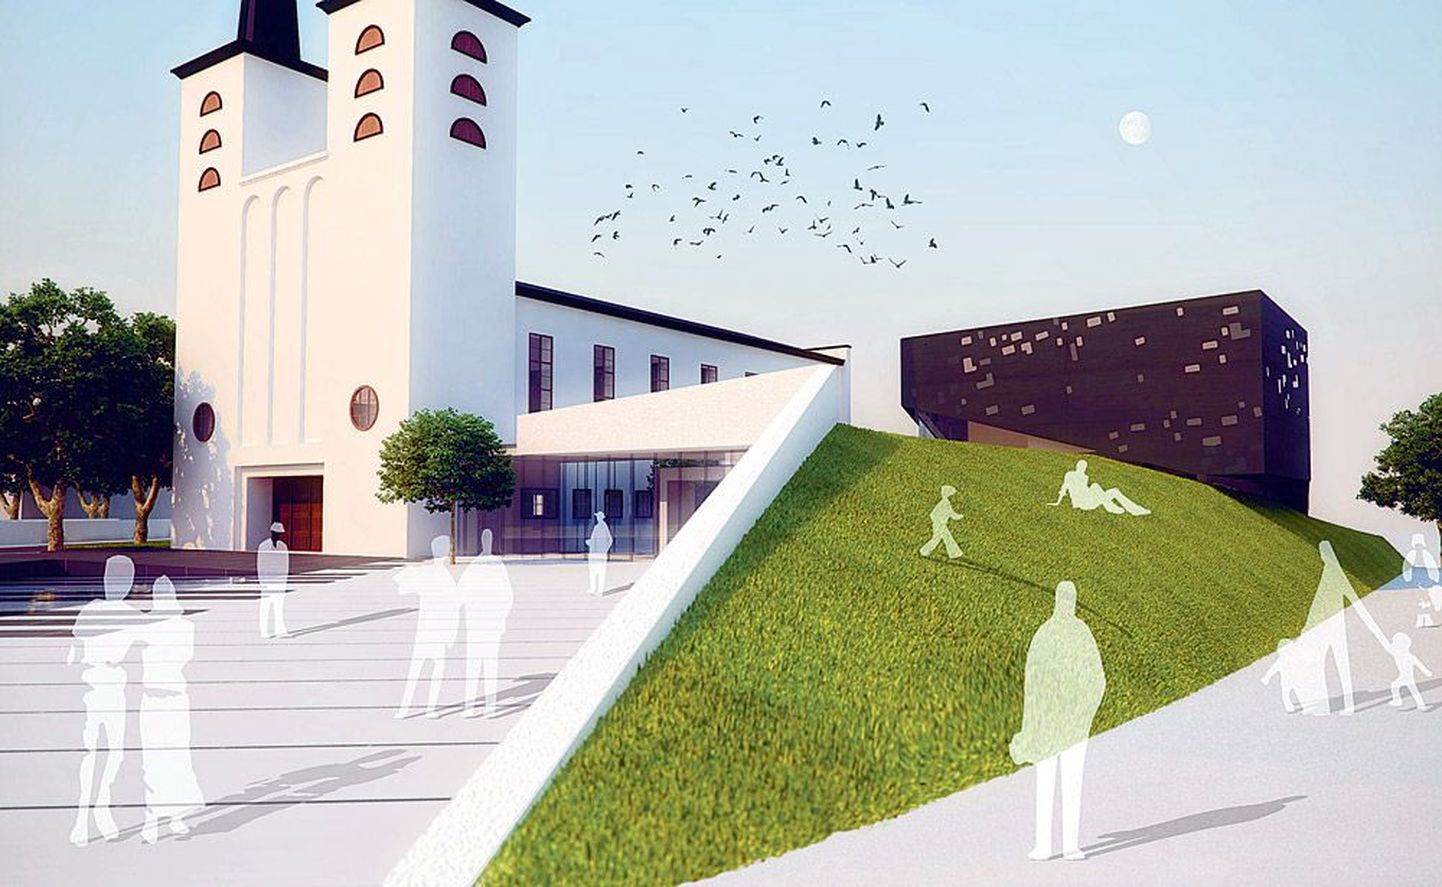 «Tin­tin’na:buli» – 1. koht. Selle  kavandi järgi rekonstrueeritakse tulevikus Pauluse kirik Arvo Pärdi nimeliseks kontserdimajaks.